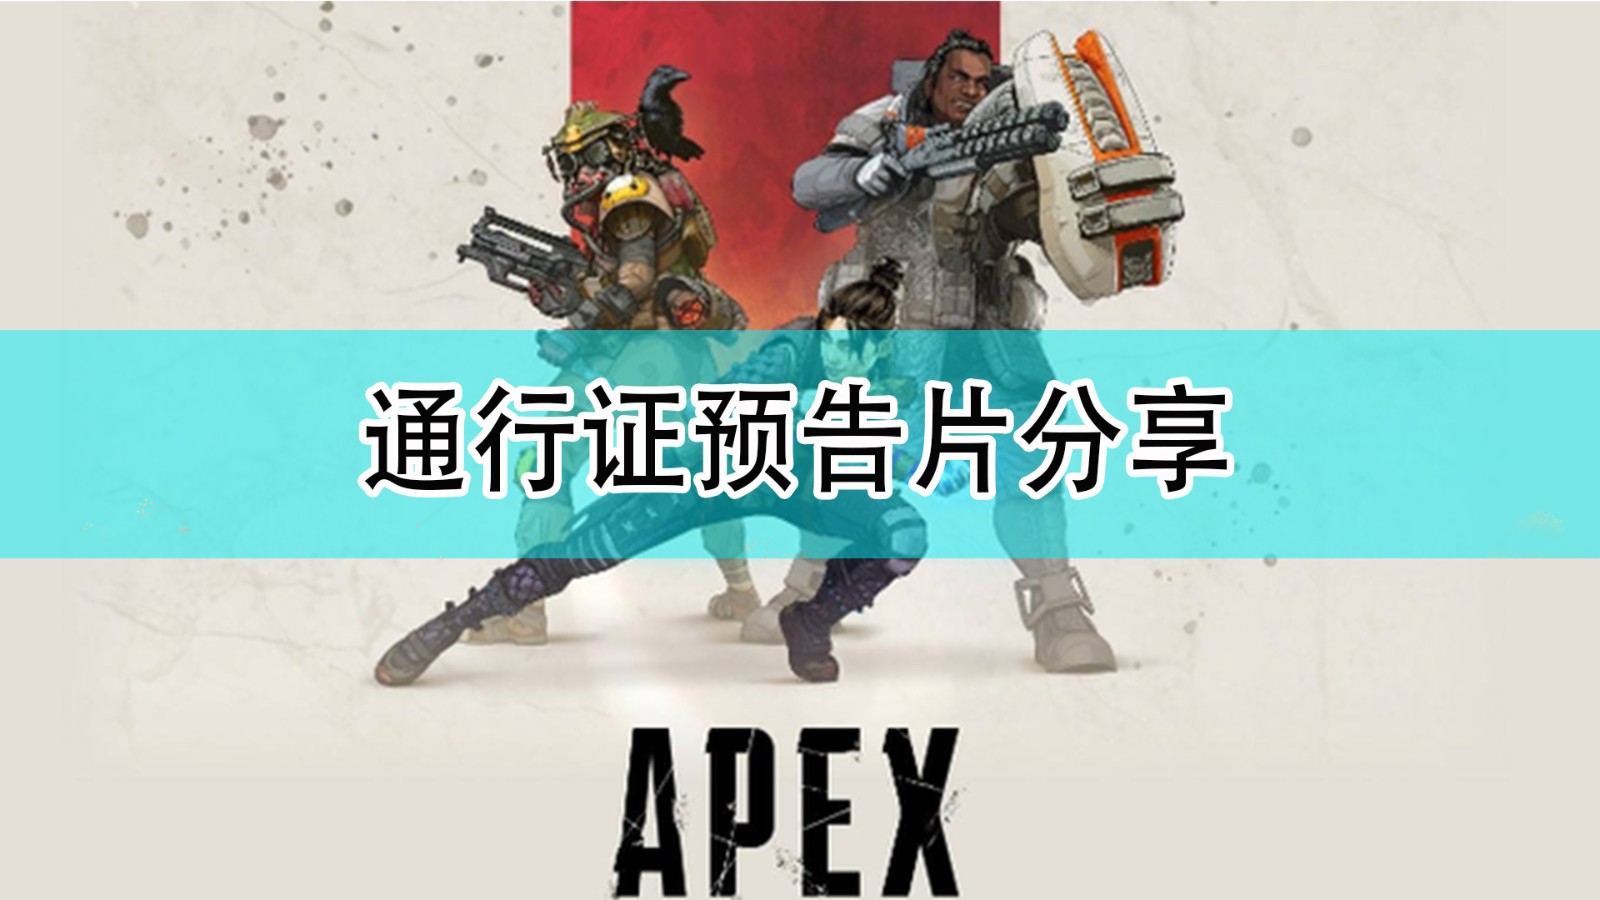 《Apex英雄》第十一賽季通行證預告片分享